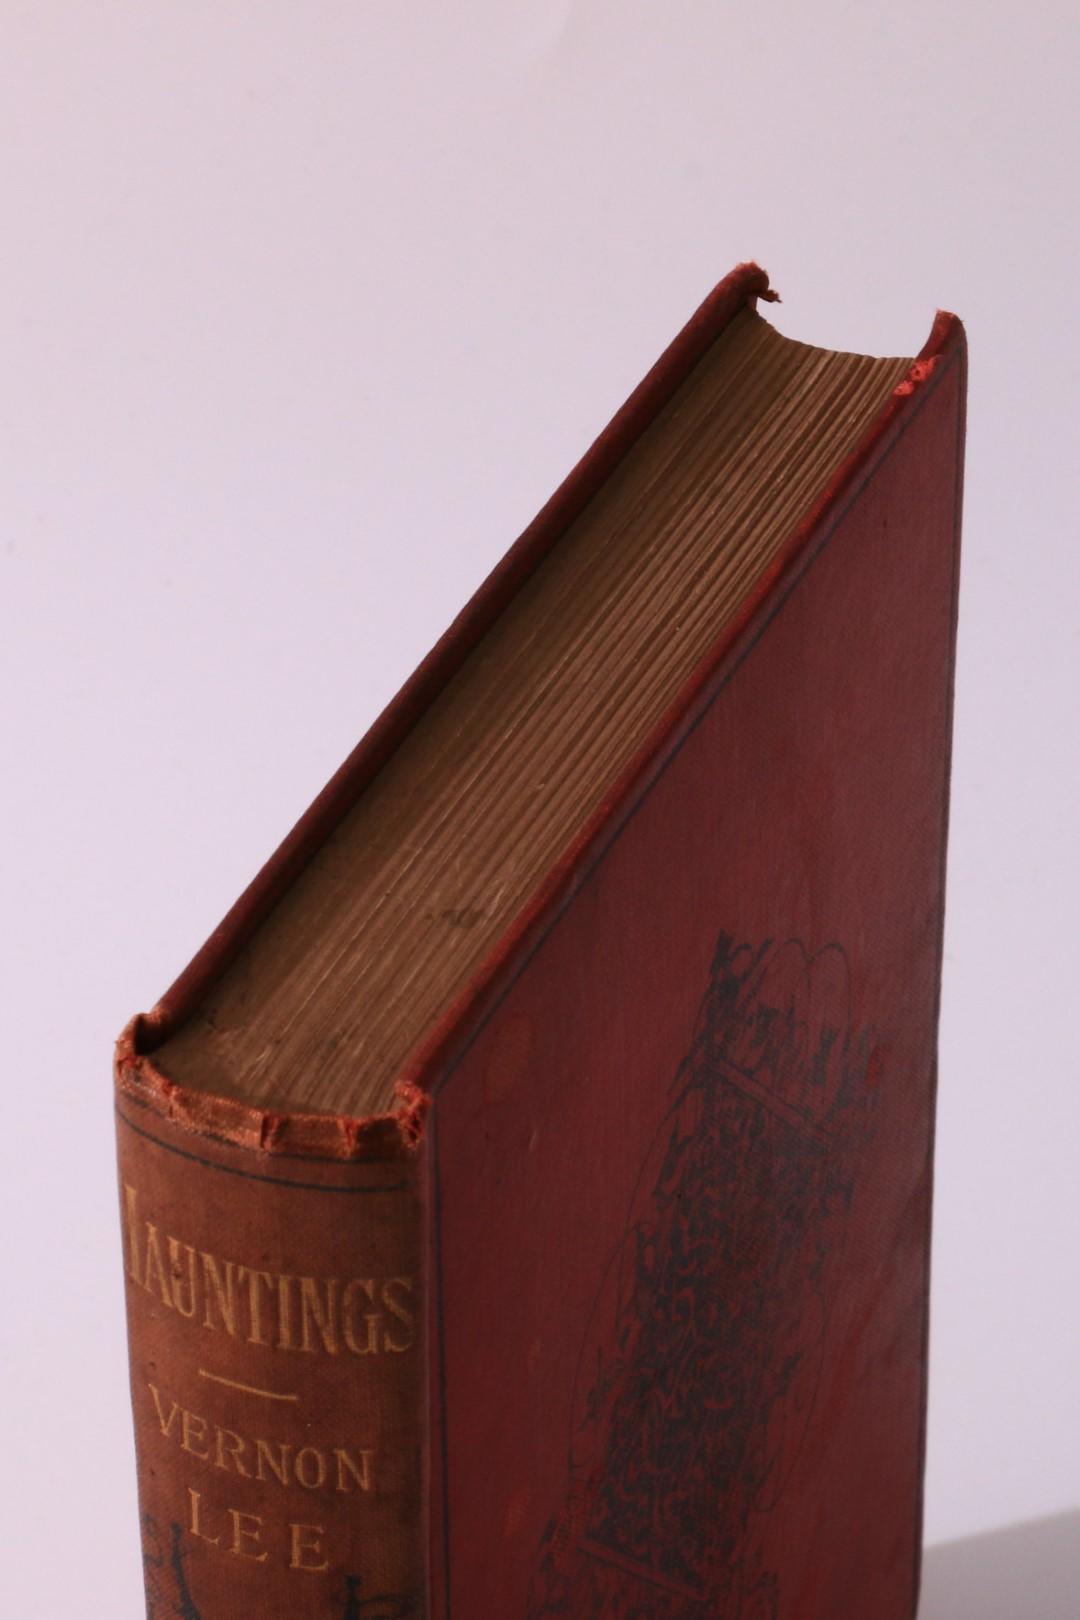 Vernon Lee - Hauntings - Heinemann, 1890, First Edition.